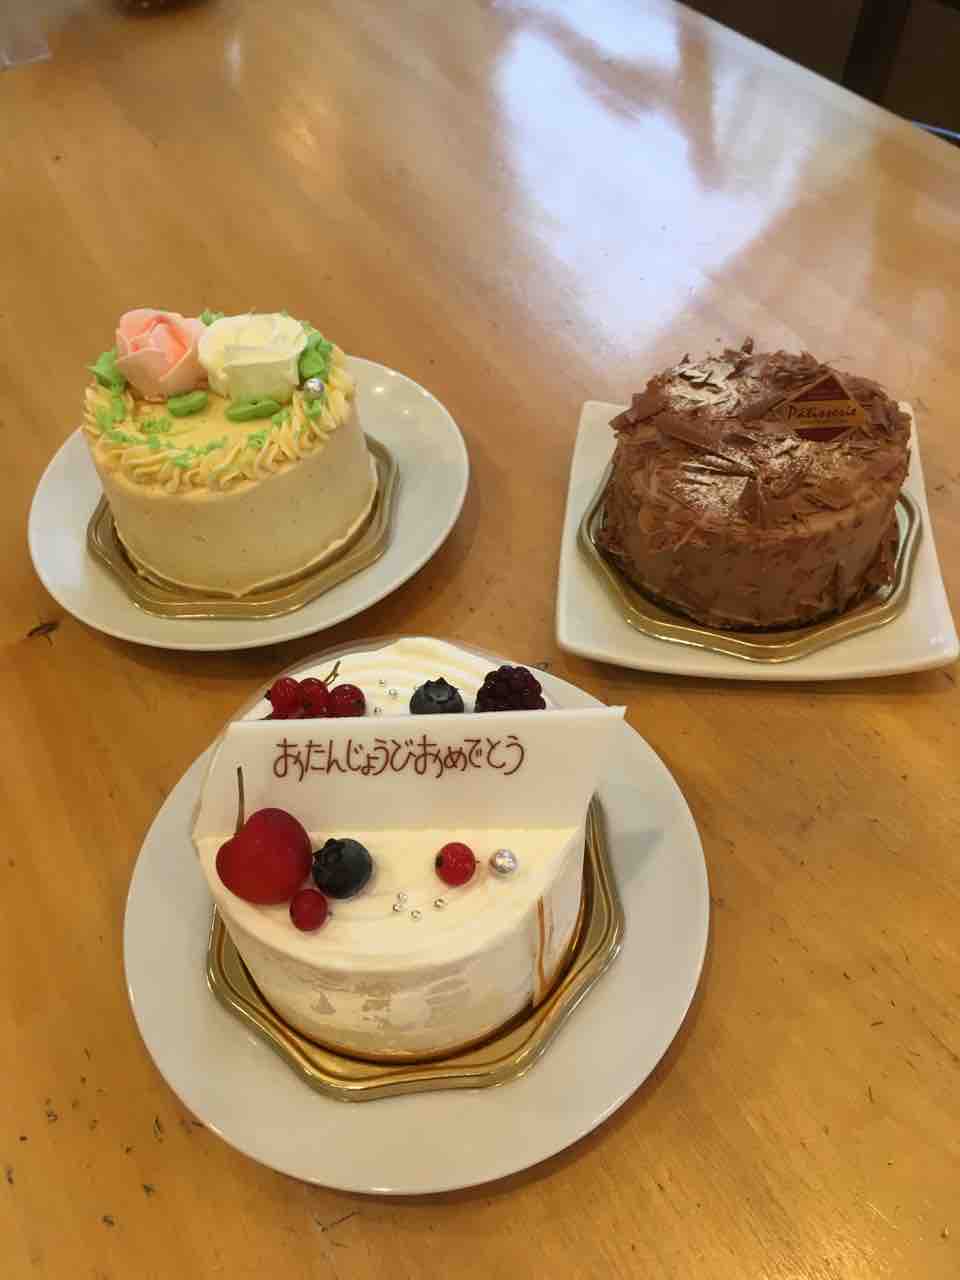 3号のデコレーションケーキ 八ケ岳高原 小淵沢のケーキ屋 シャンペトルのブログ